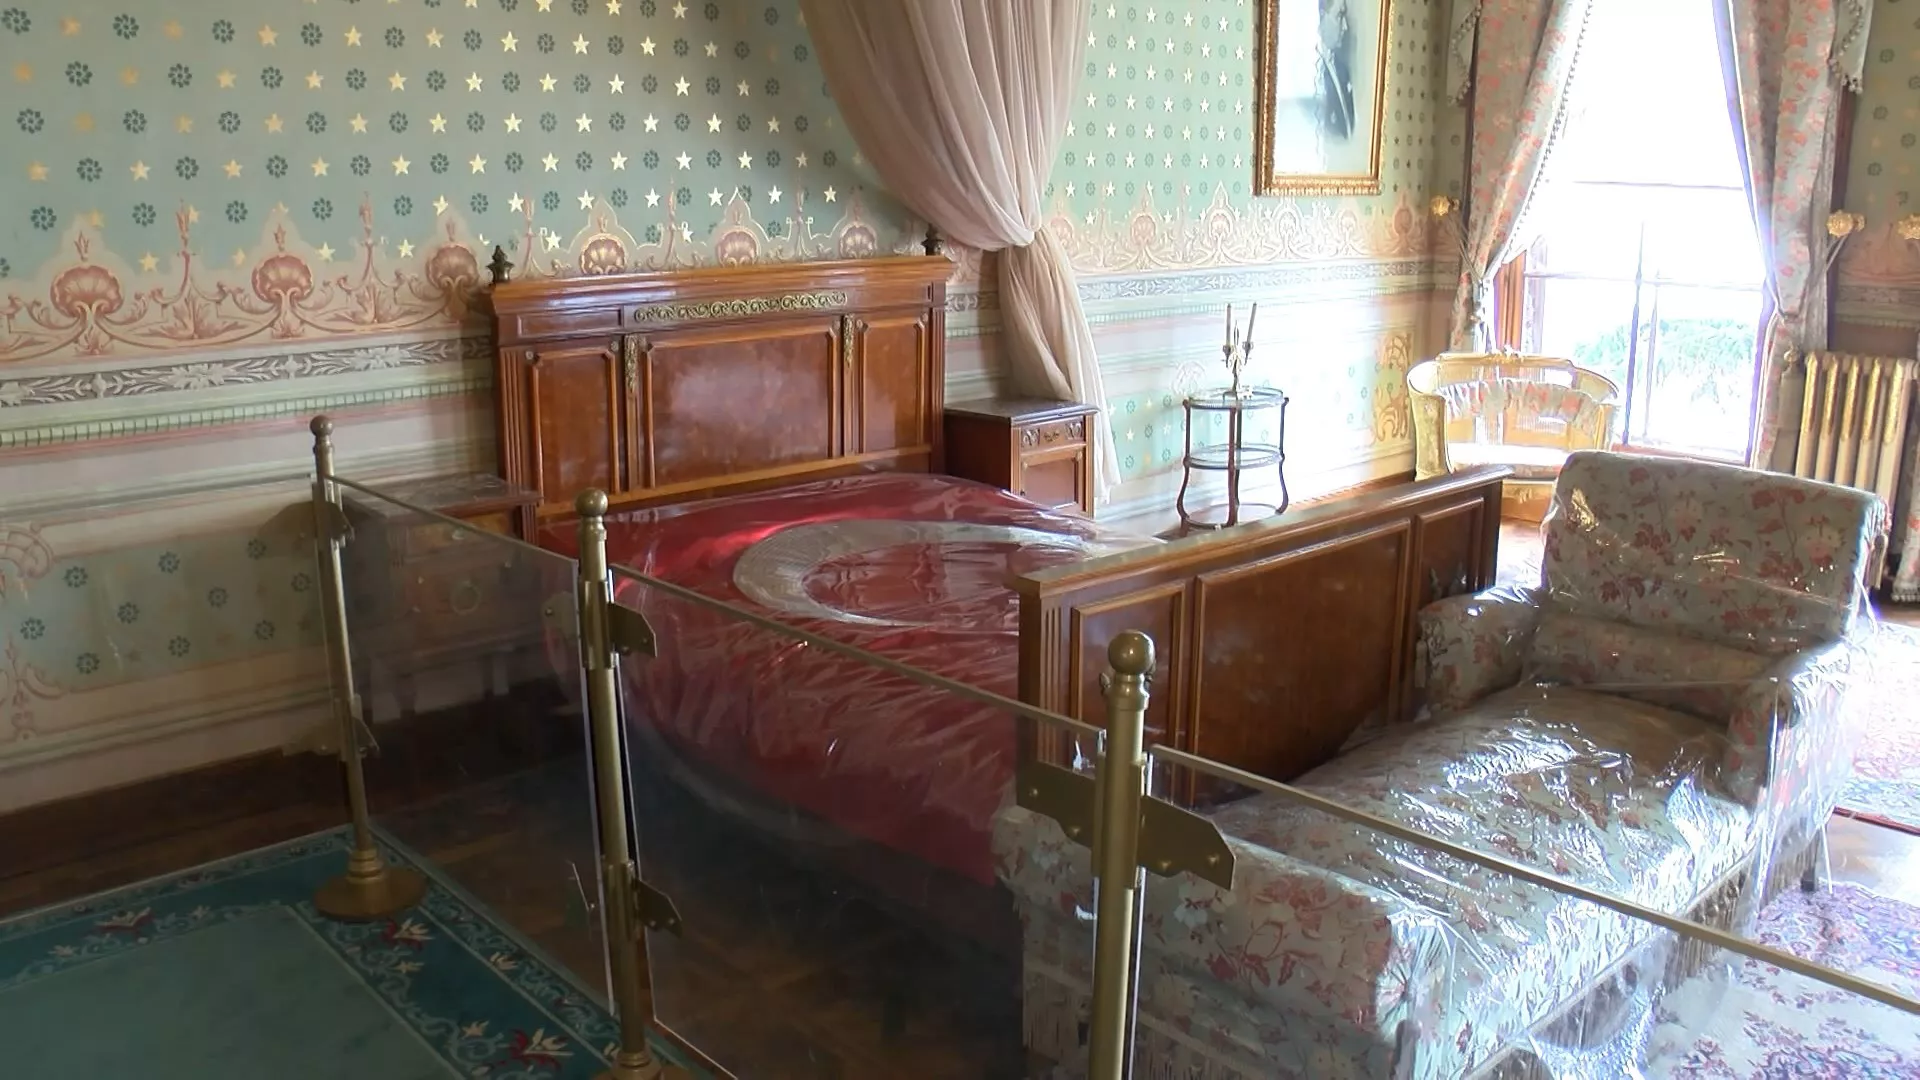 Atatürk'ün dolmabahçe'deki odası 10 kasım'a hazır